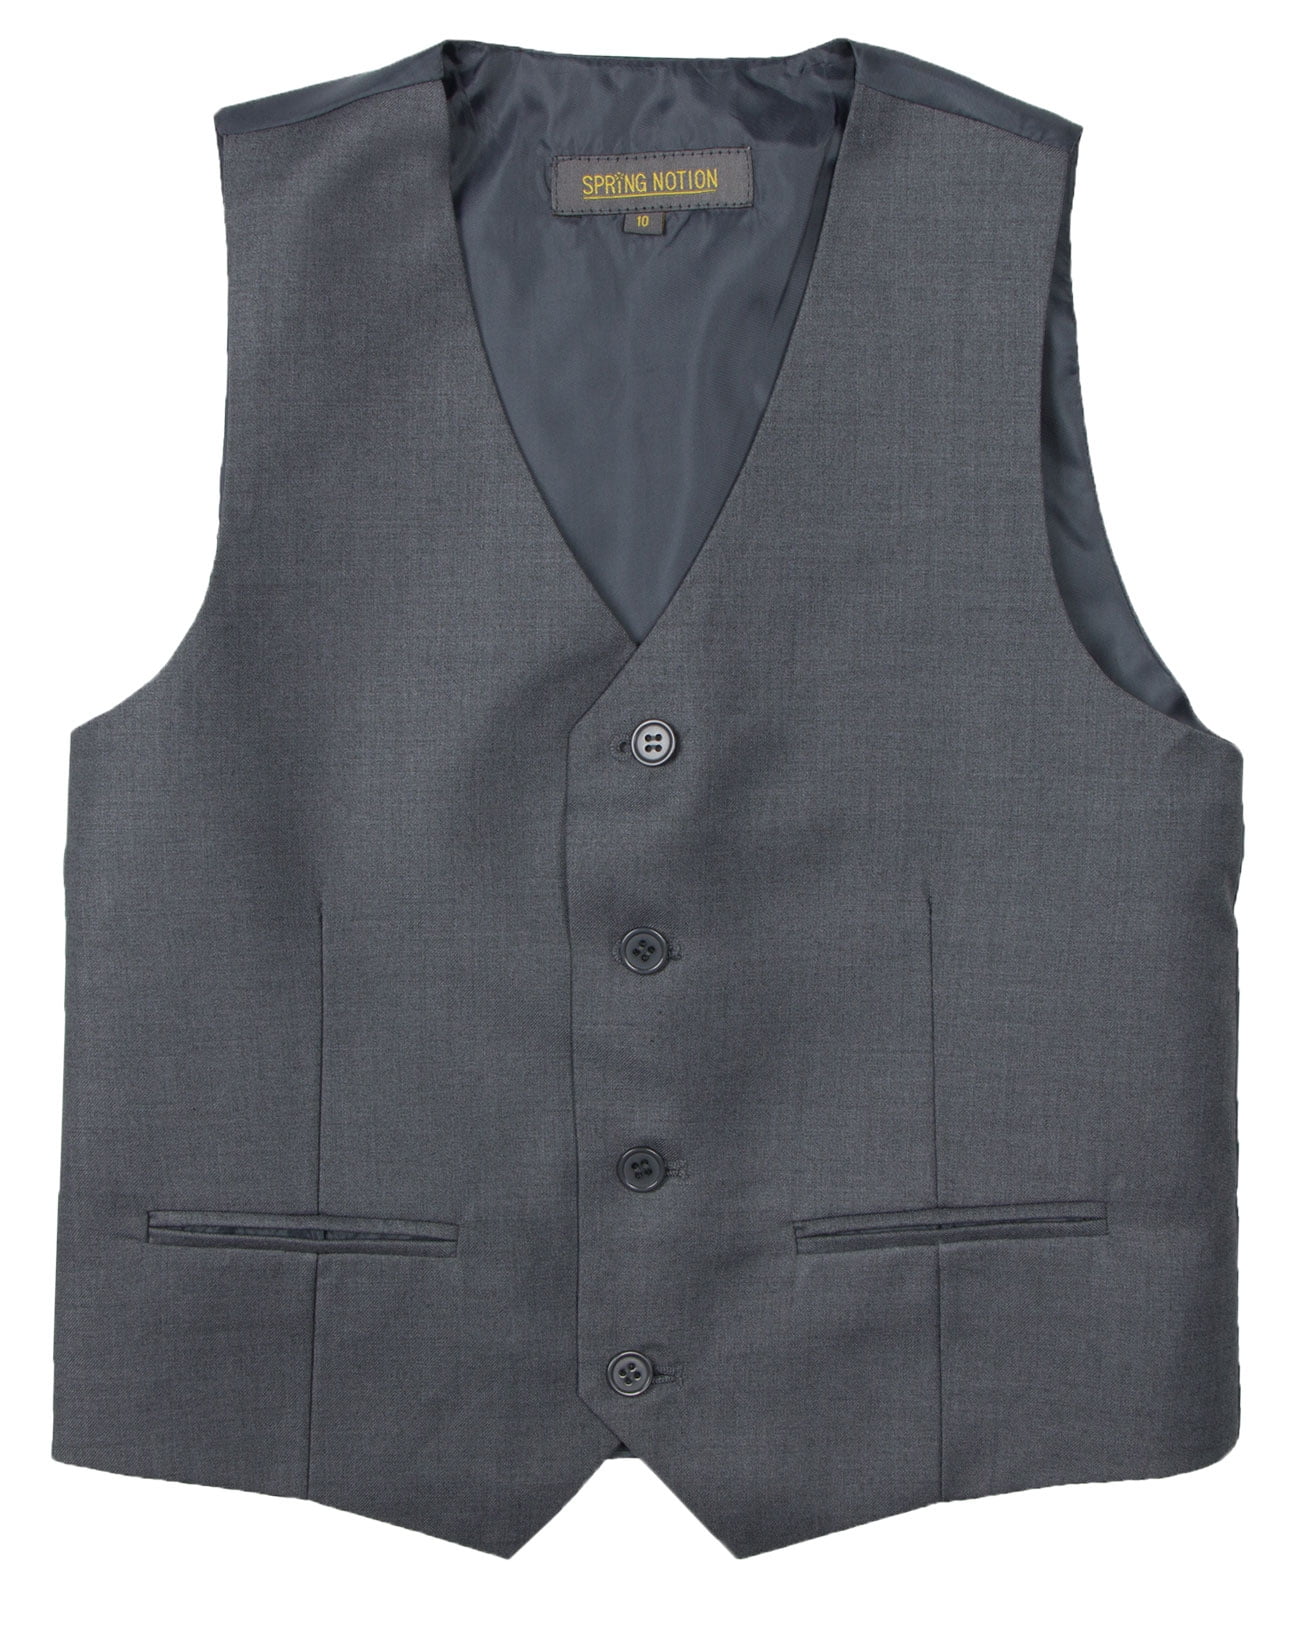 Spring Notion Big Boys' Two Button Suit Vest, Charcoal - Walmart.com